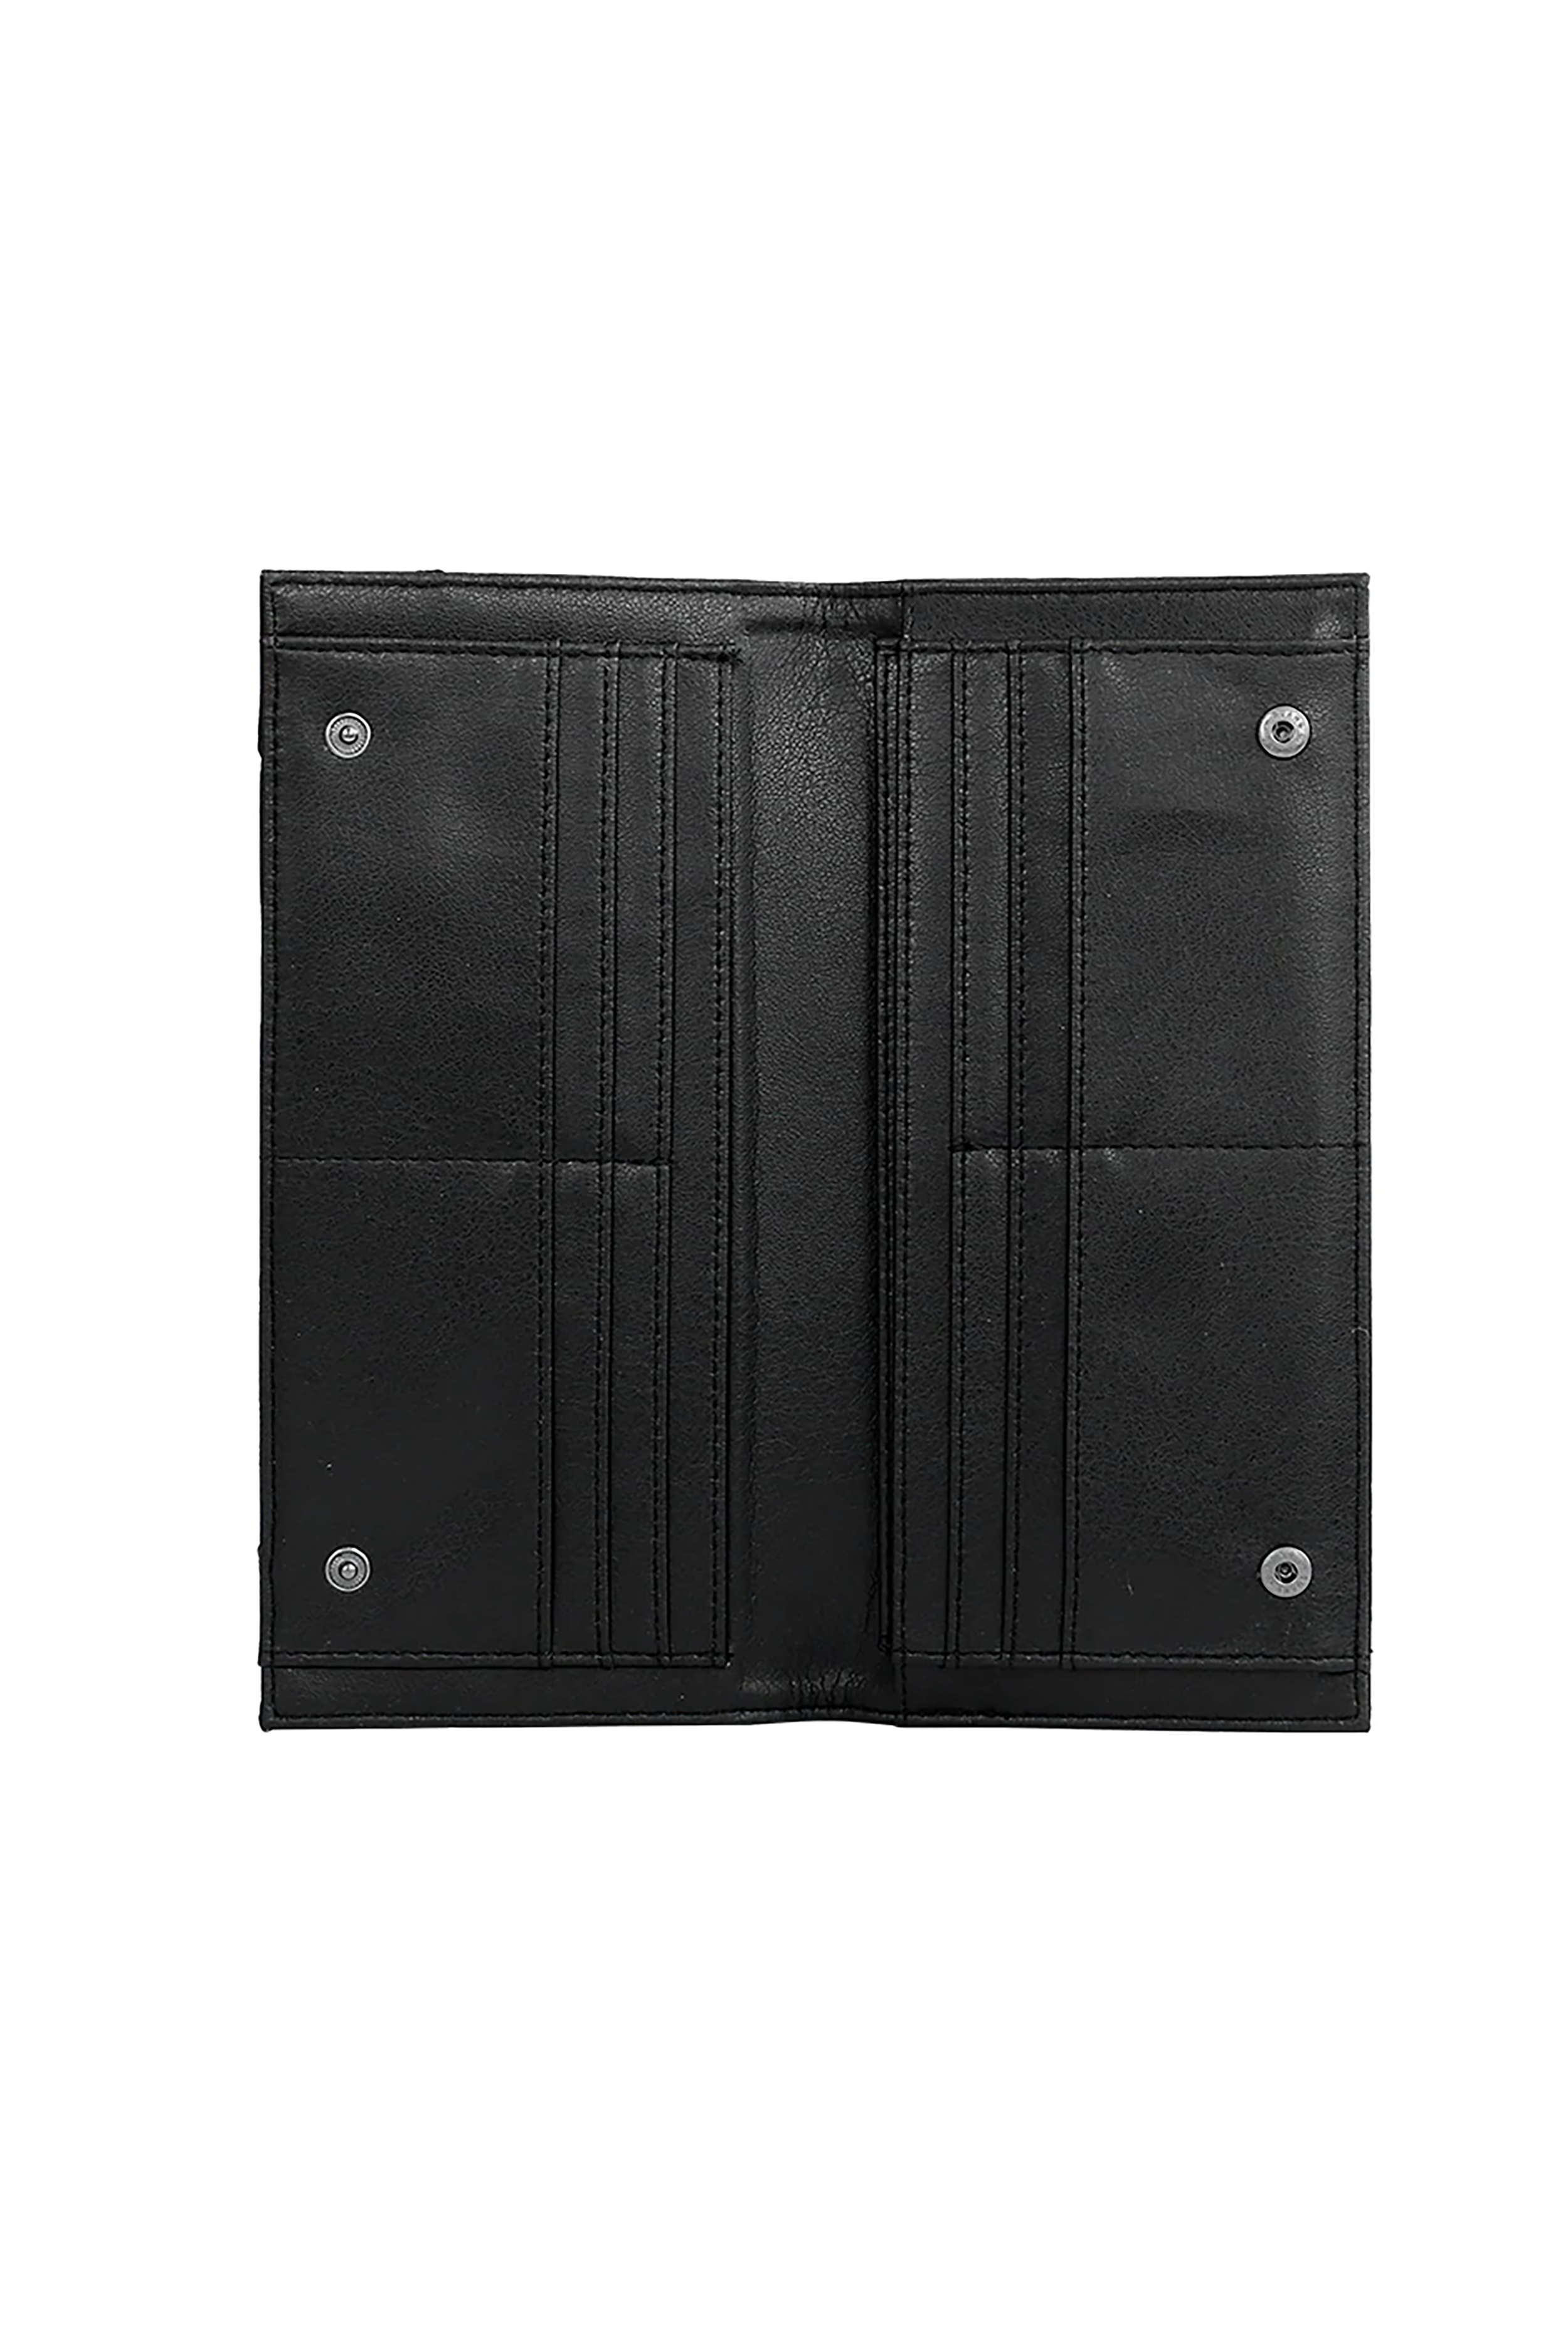 Logan Long Wallet in Black